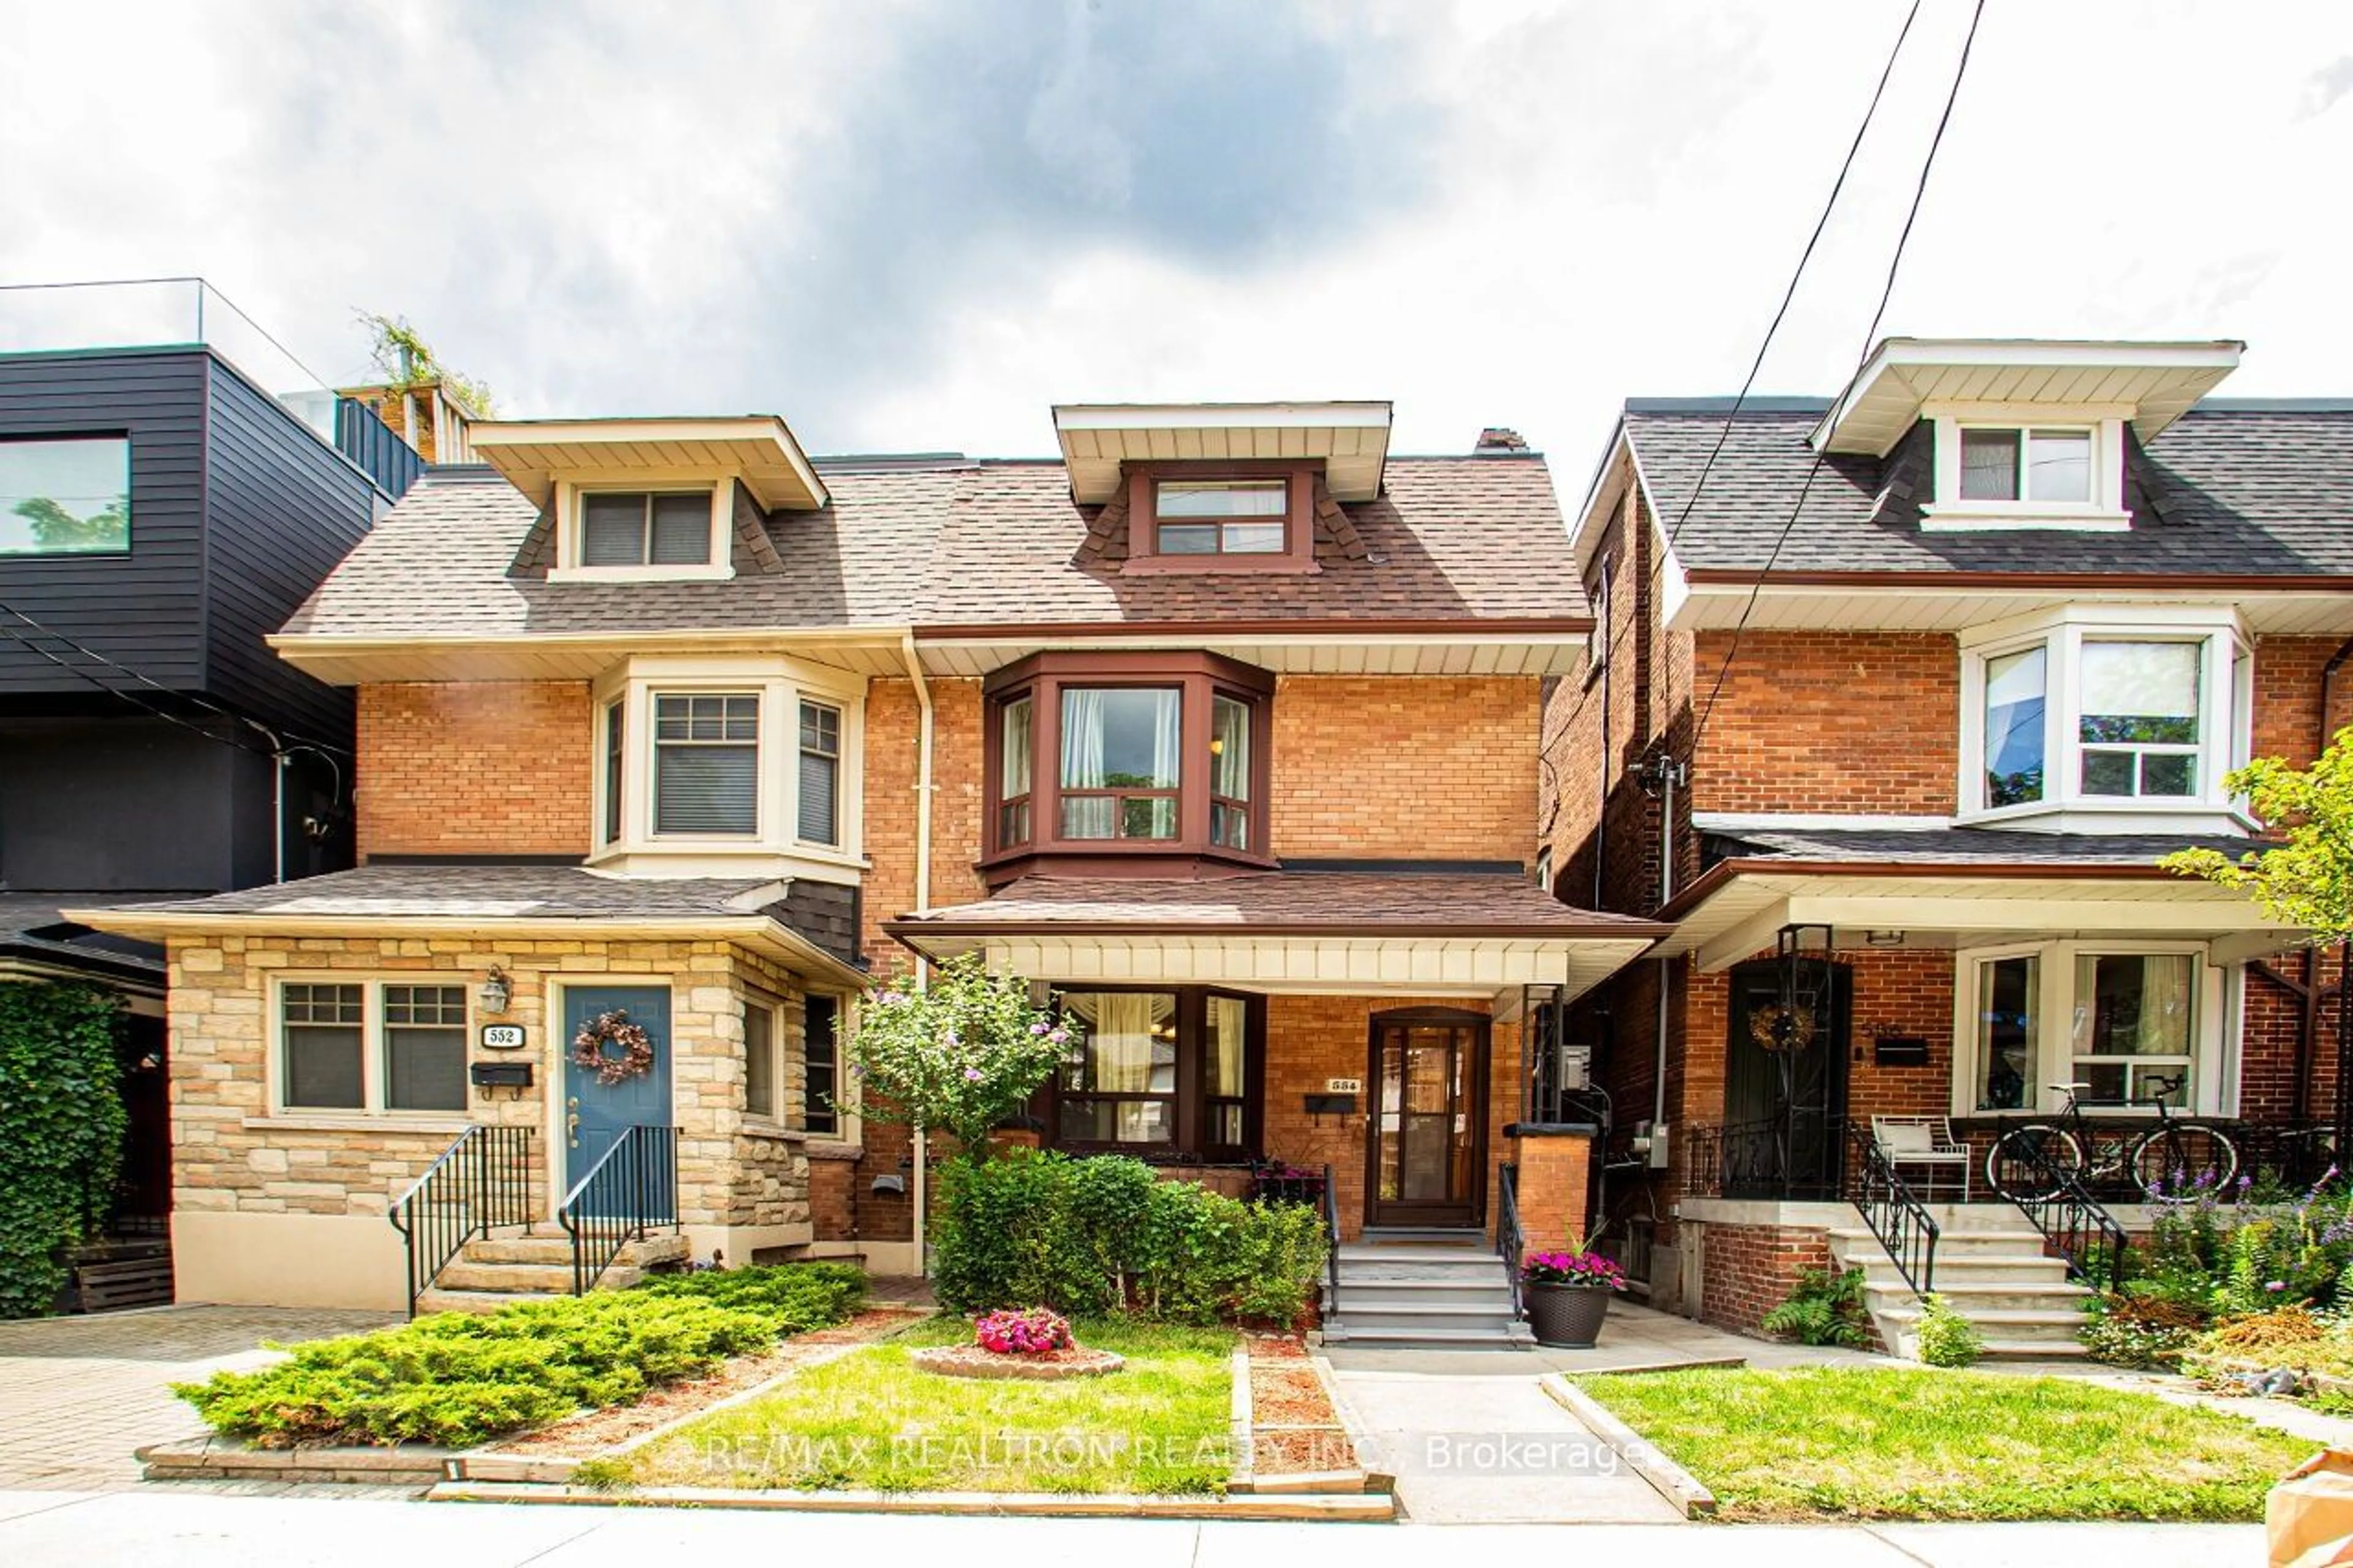 Home with brick exterior material for 554 Christie St, Toronto Ontario M6G 3E2